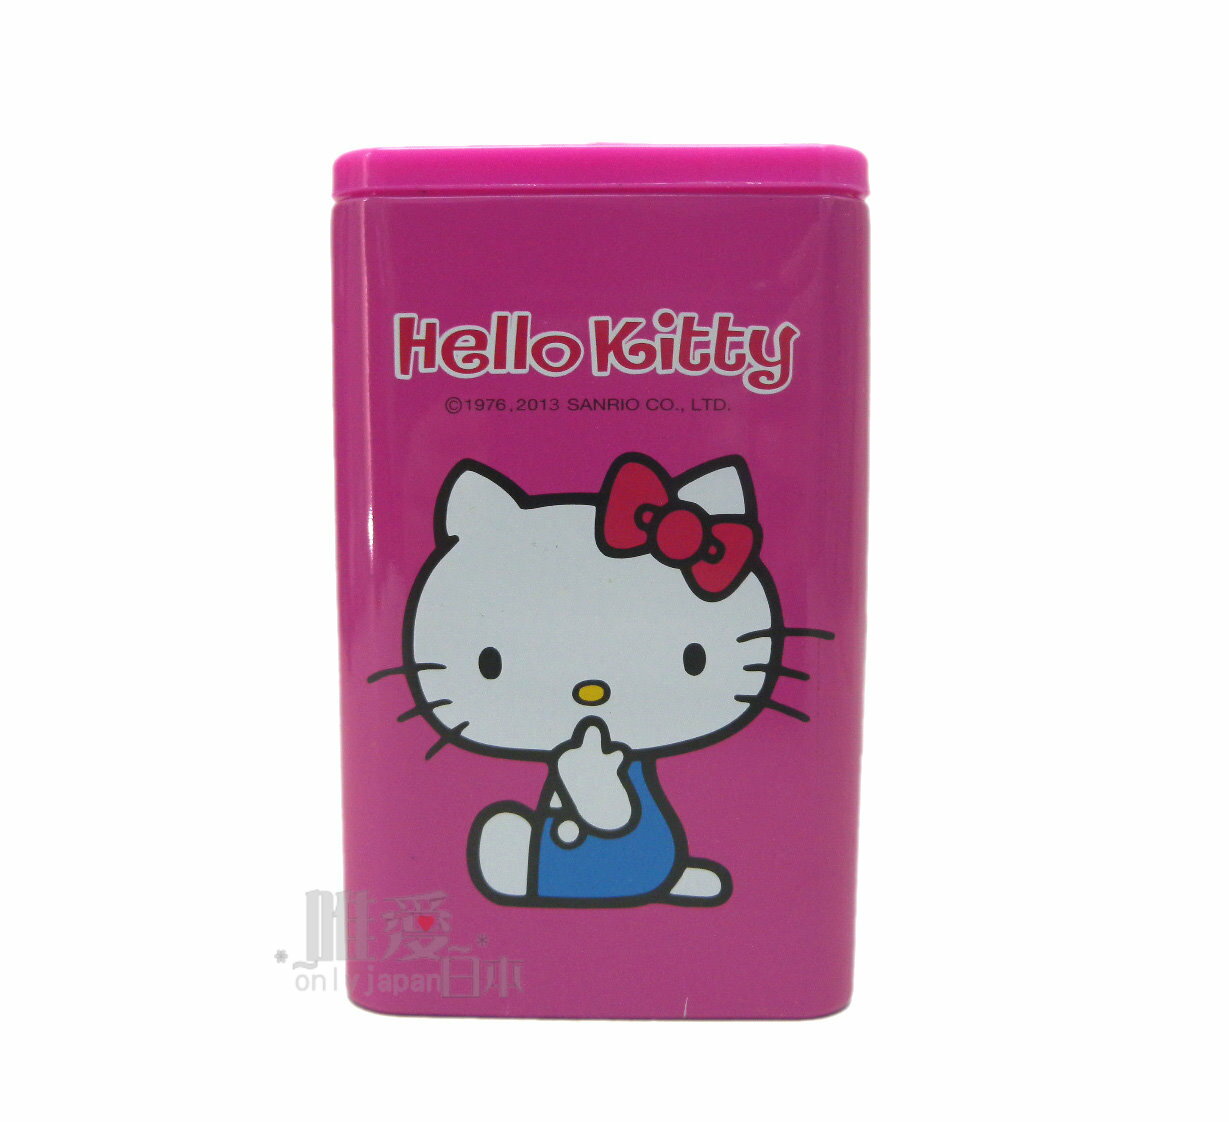 【唯愛日本】12060700002 方型分格筆筒-多結紅 三麗鷗 Hello Kitty 凱蒂貓 文具用品 筆筒